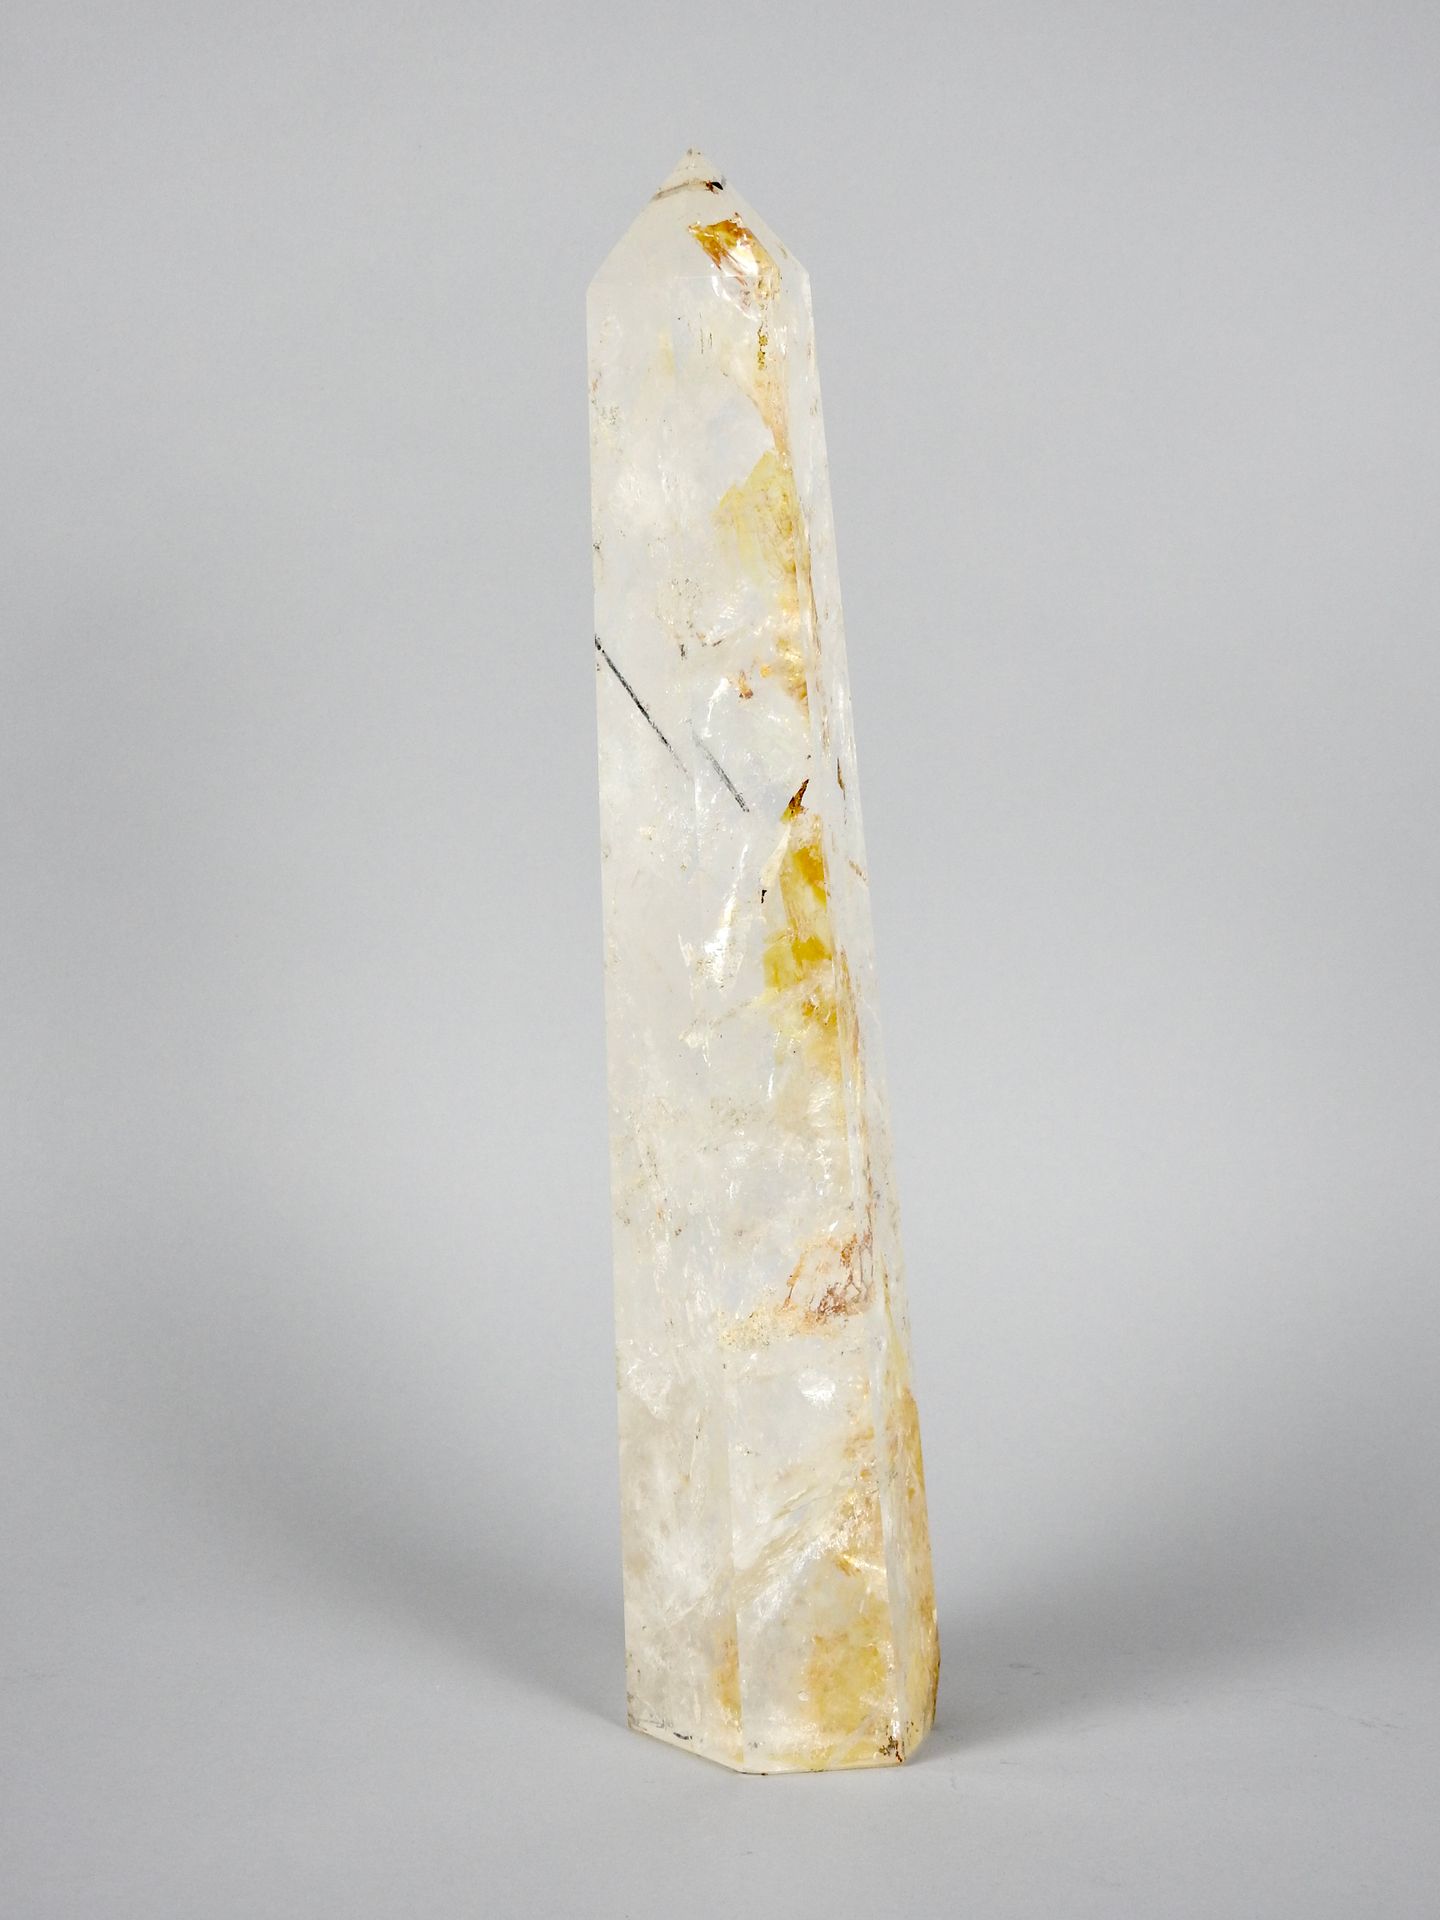 Null Quarzo di cristallo di rocca lucidato e sfaccettato

H 36 cm